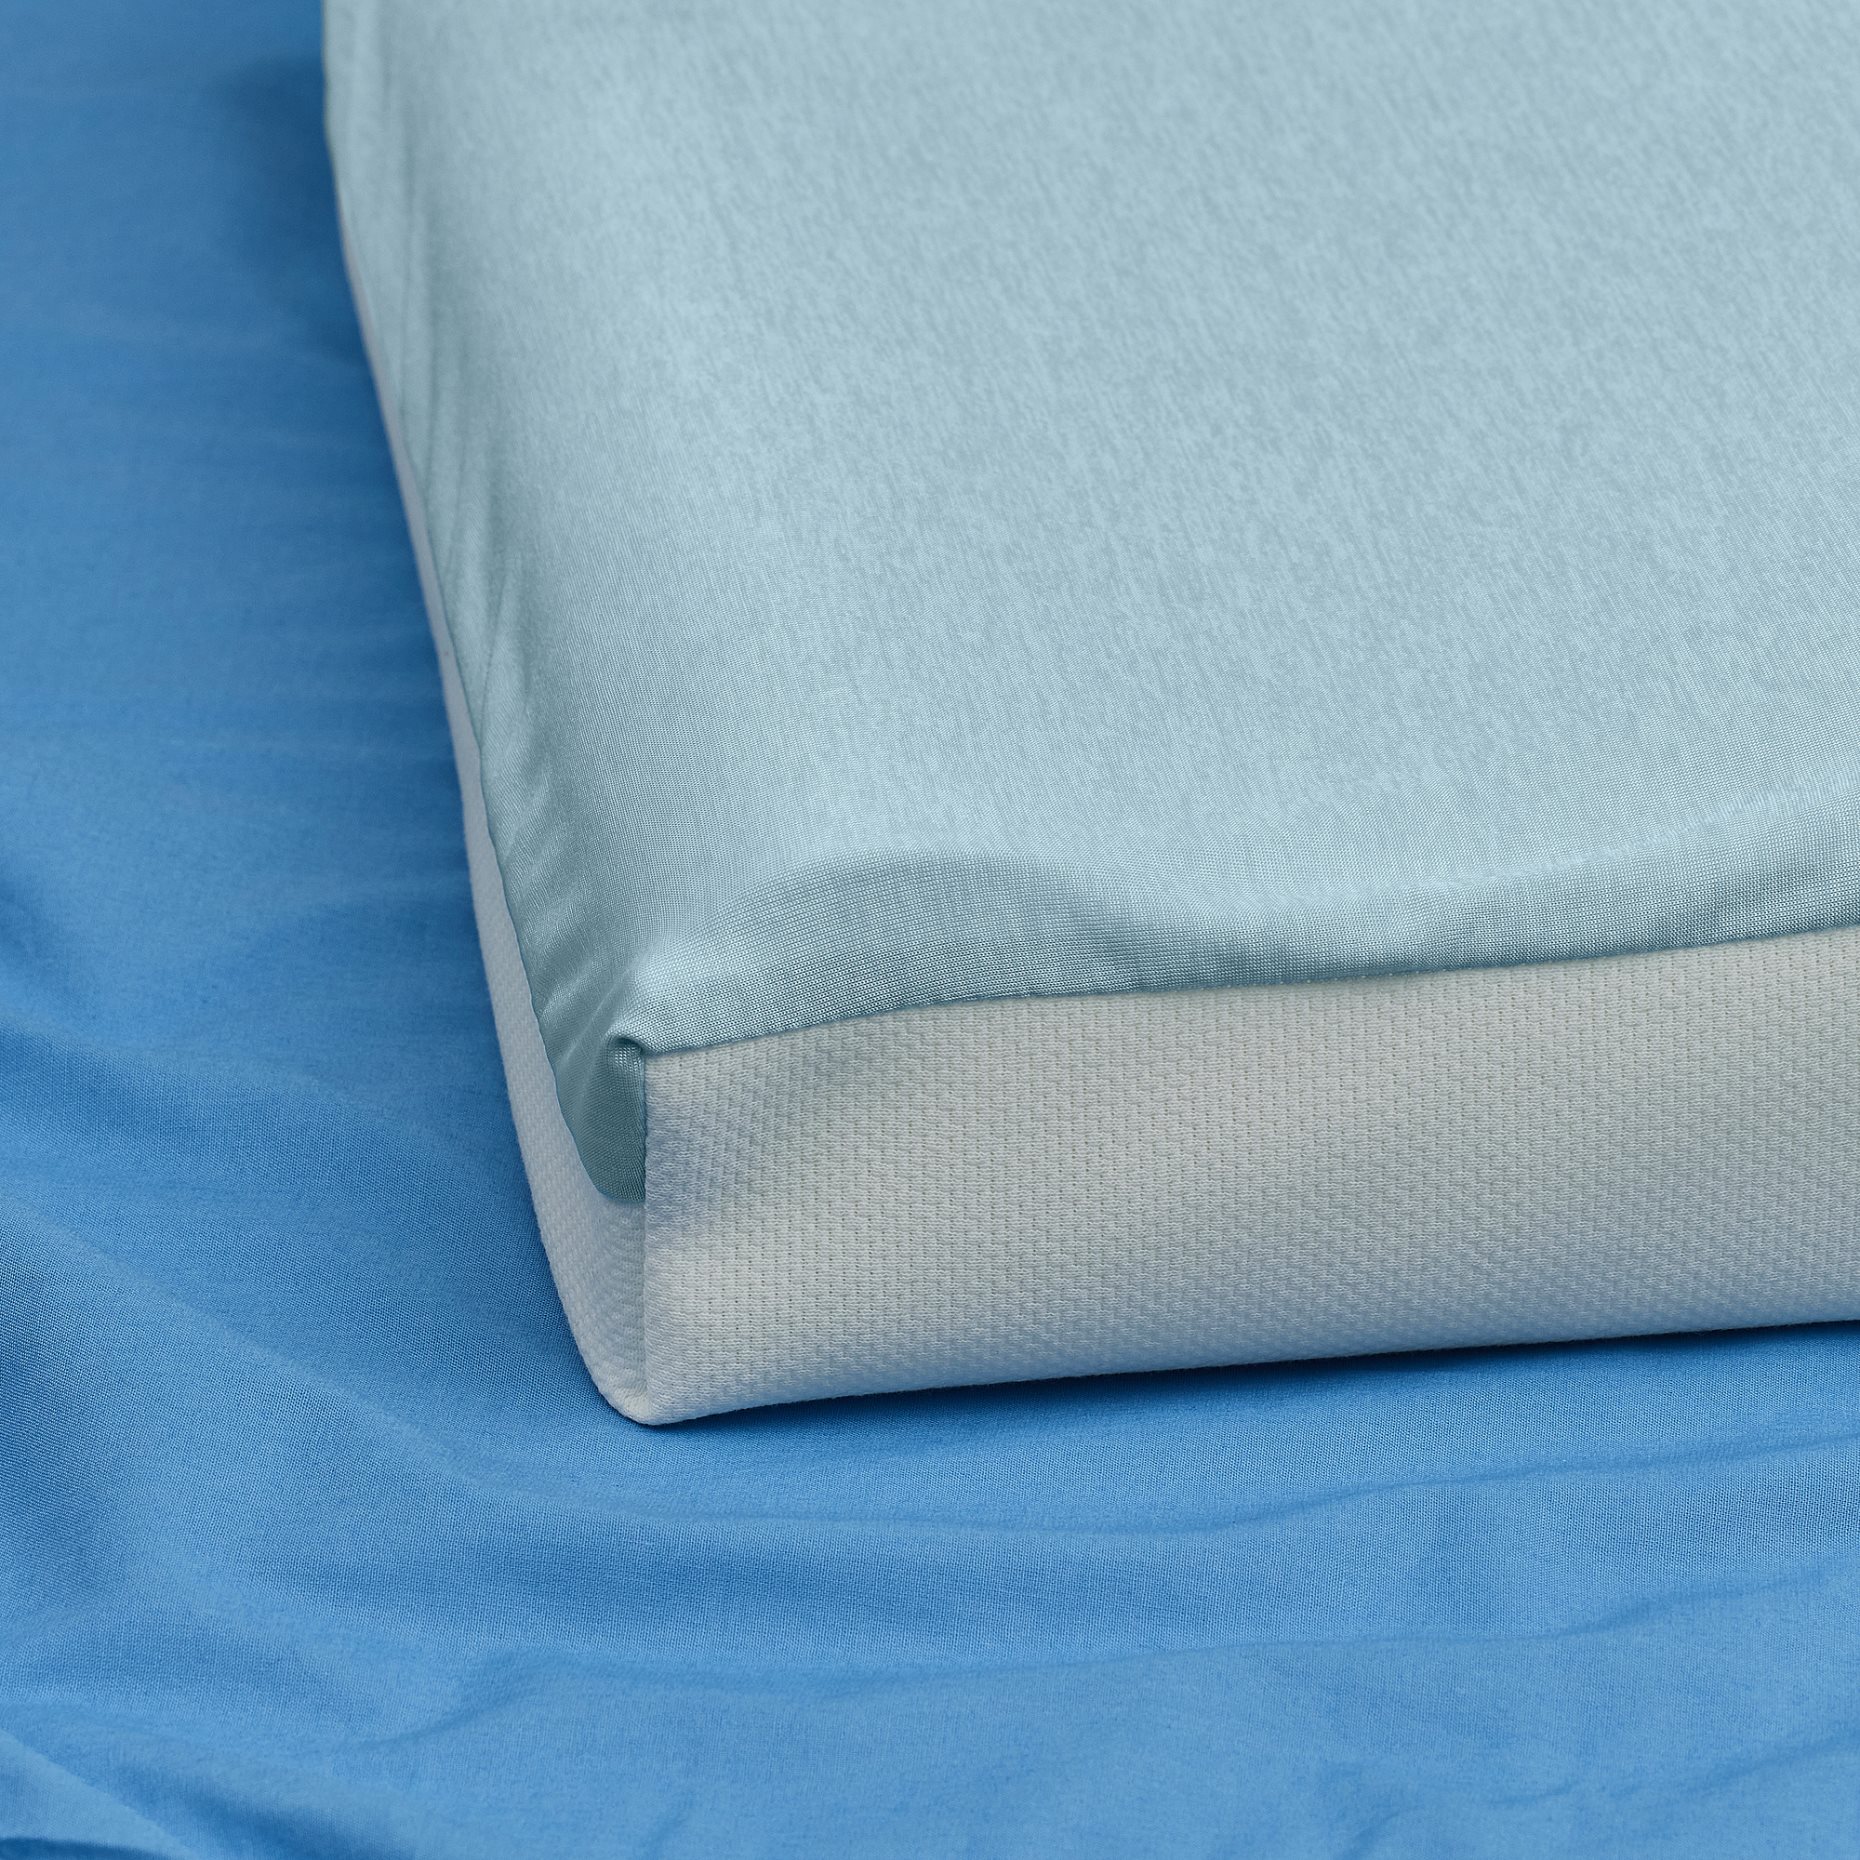 SPETSHAGTORN, εργονομικό μαξιλάρι για ύπνο πλάι/ανάσκελα, 33x45 cm, 205.785.09